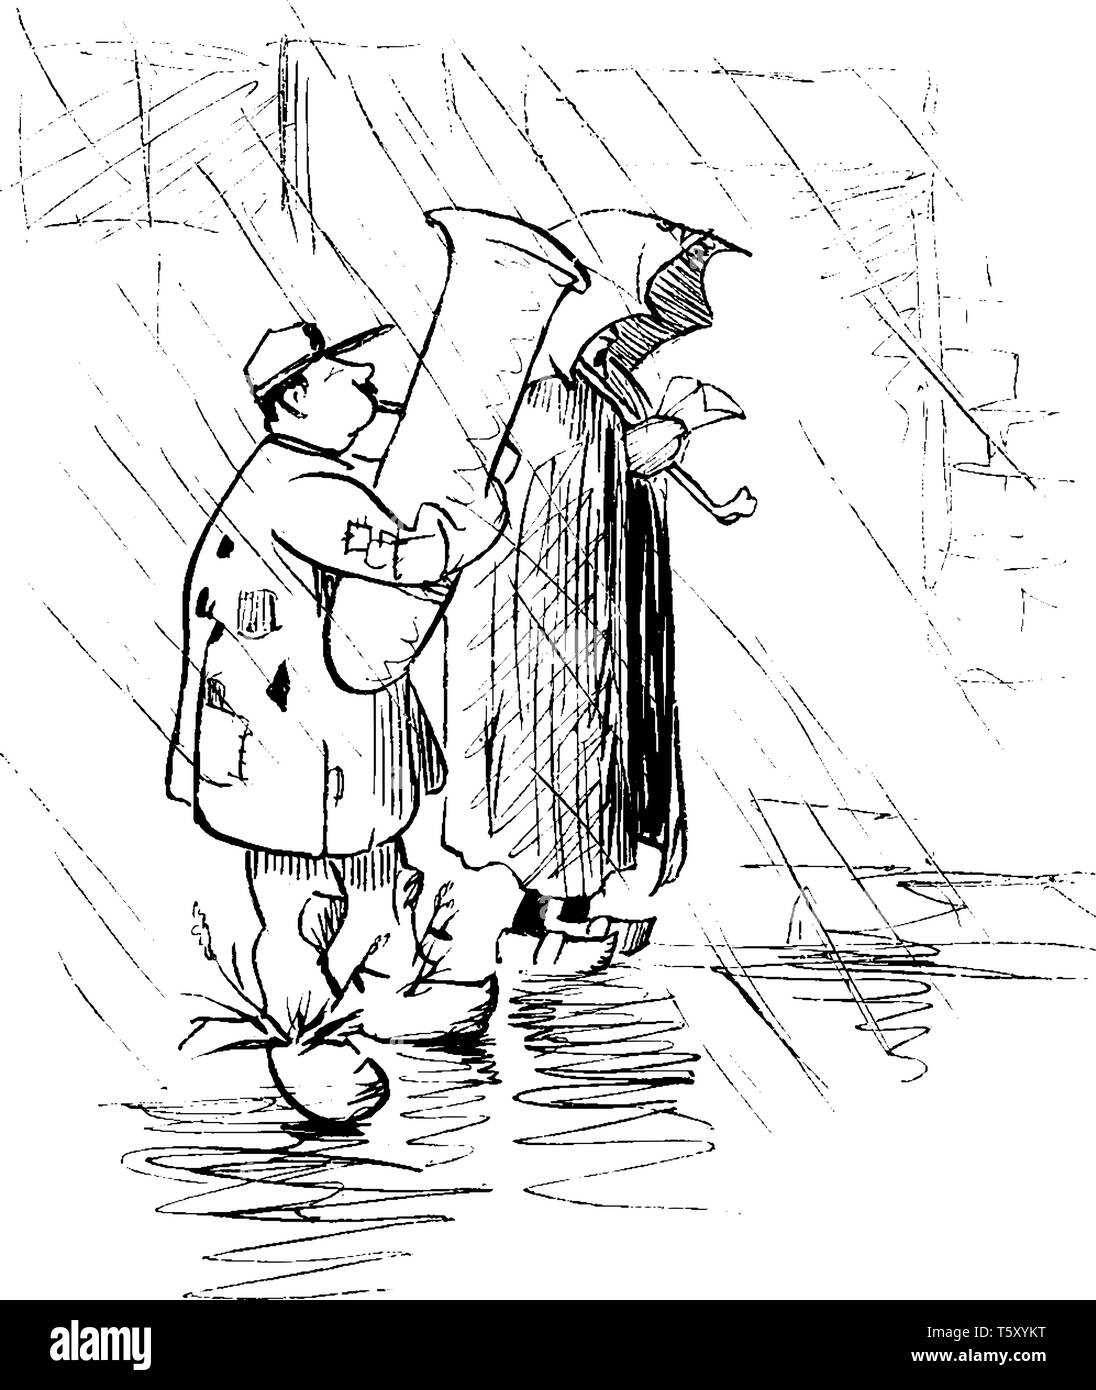 Deux ménestrels errants dans la pluie, l'un d'eux tenant un parapluie, vintage dessin ou gravure illustration Illustration de Vecteur